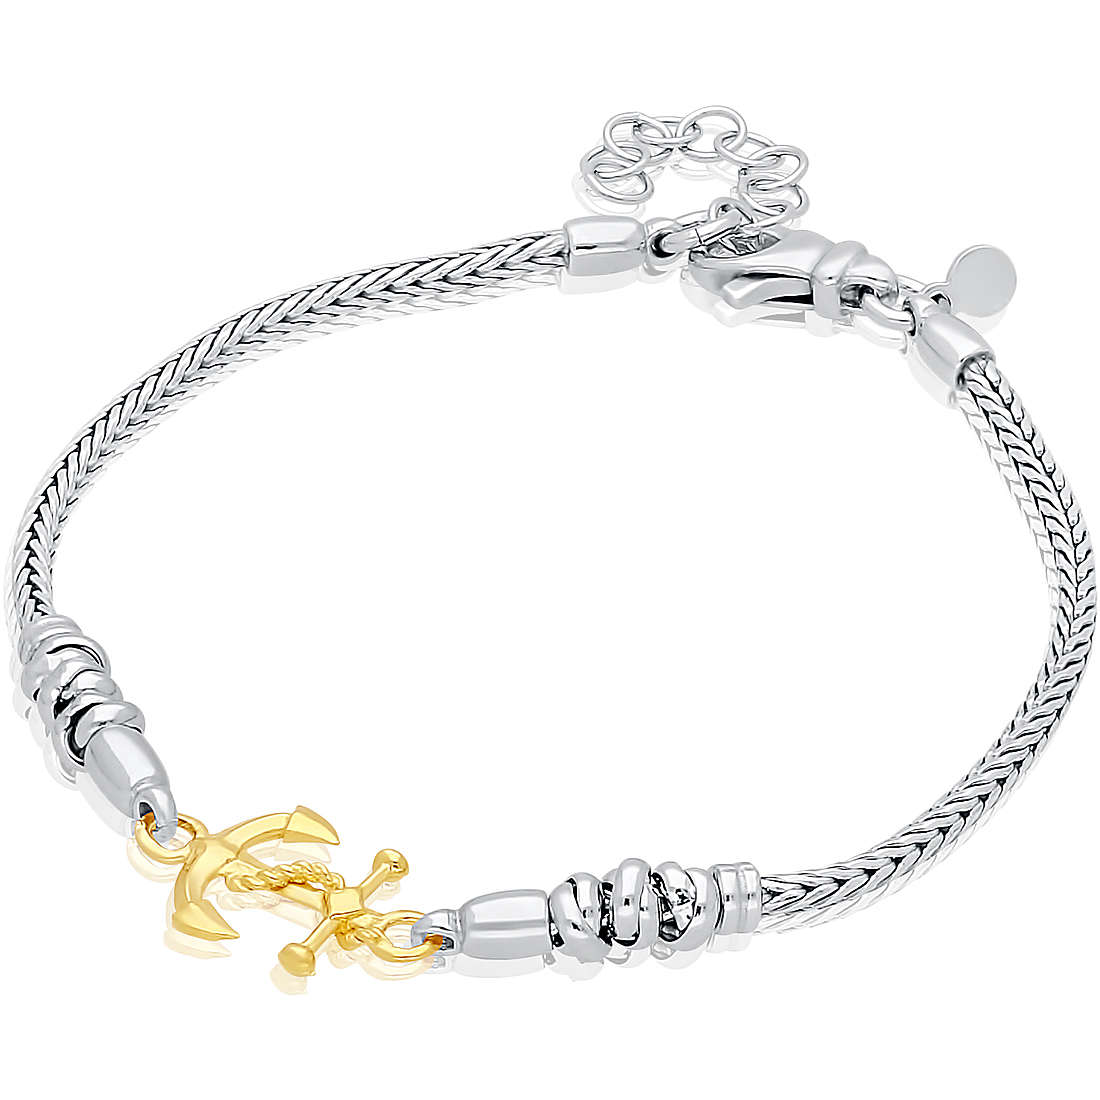 bracelet woman Chain 925 Silver jewel GioiaPura DV-24944373